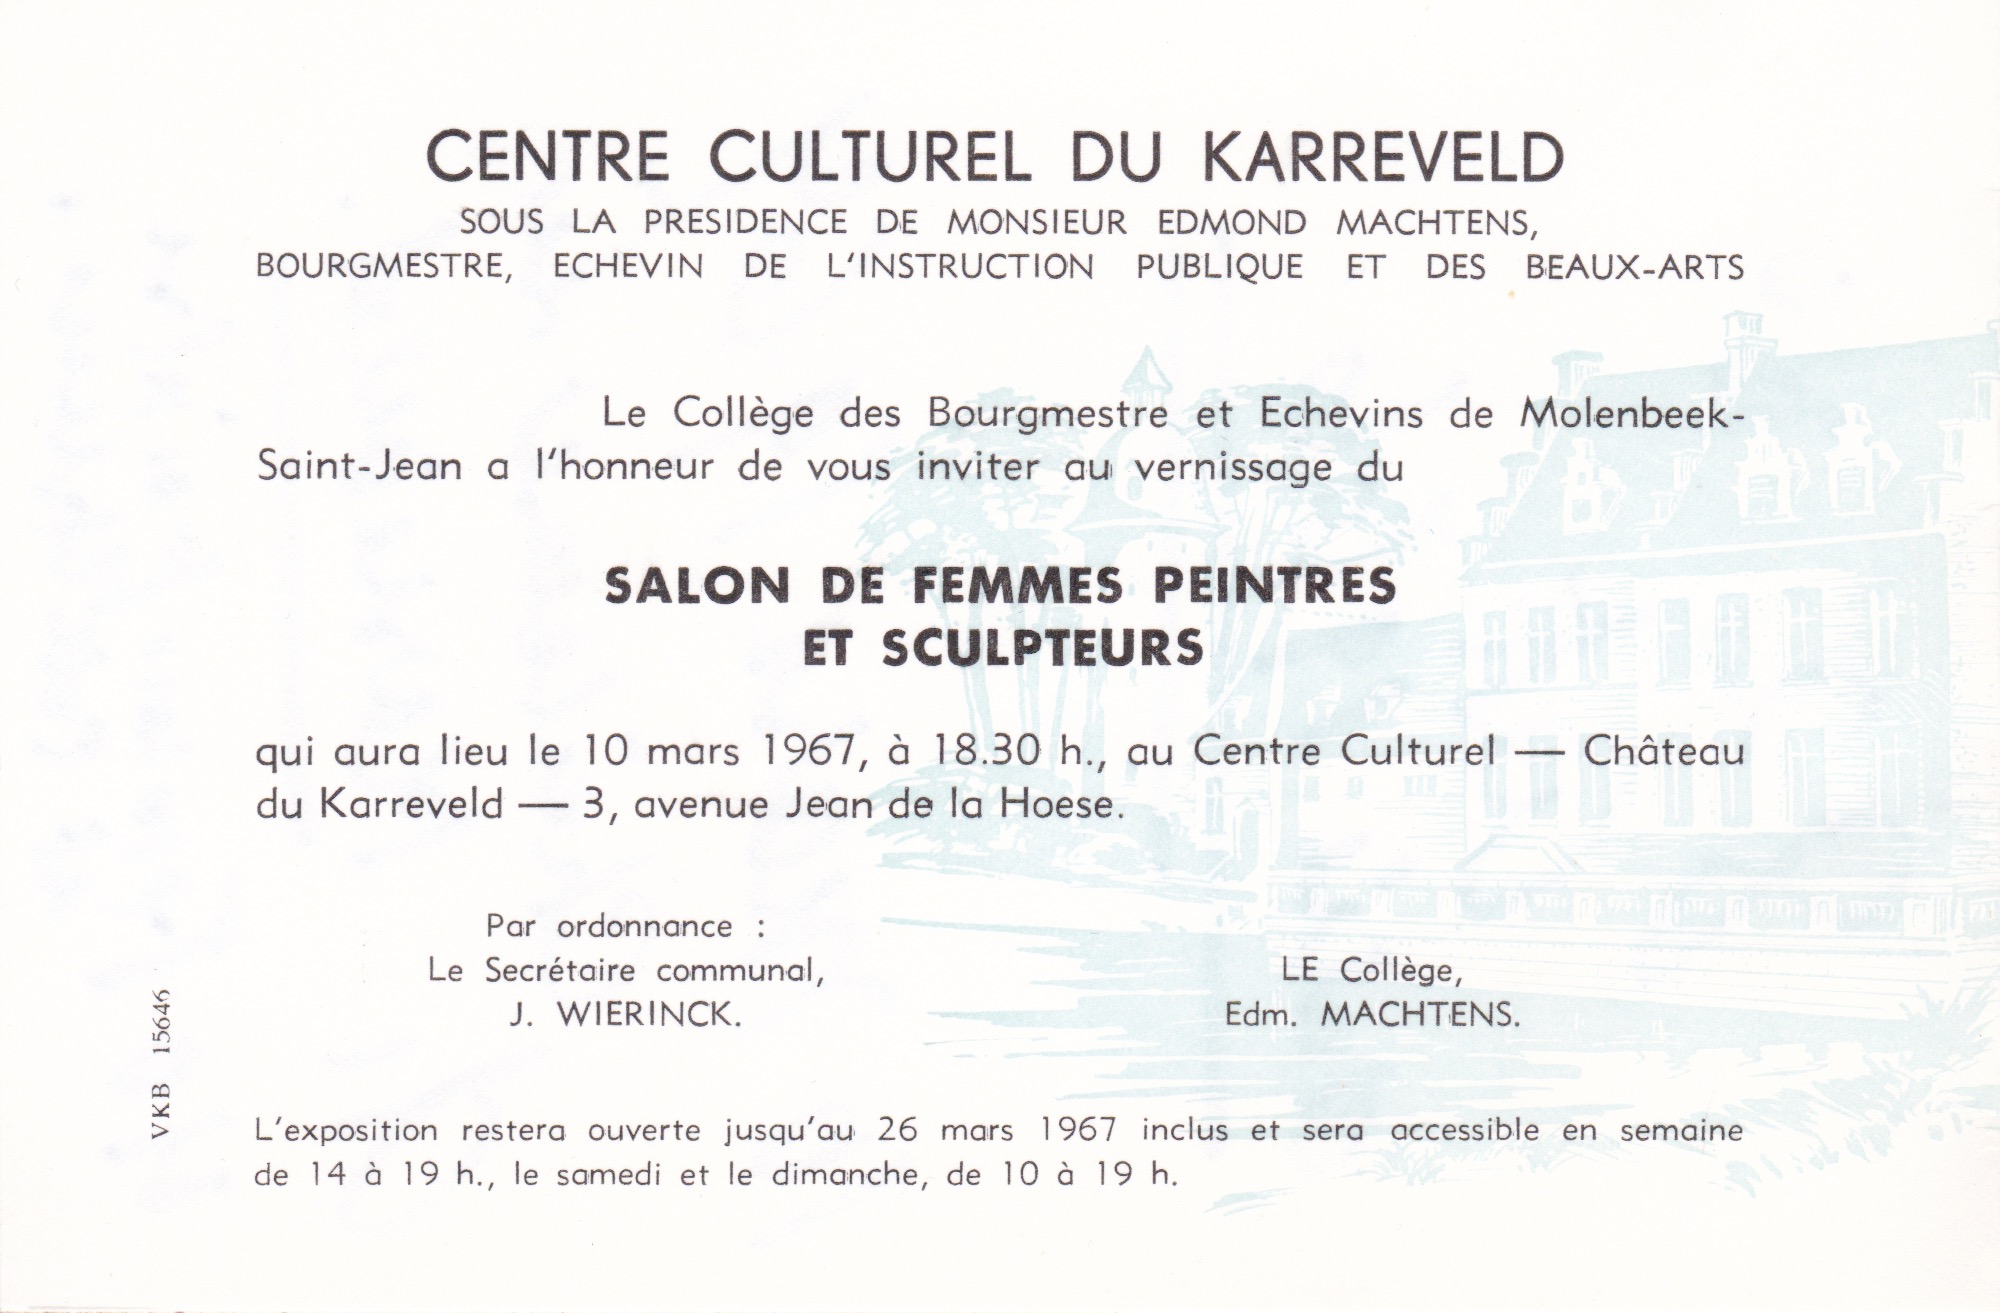 Salon de femmes peintres et sculpteurs, 1967